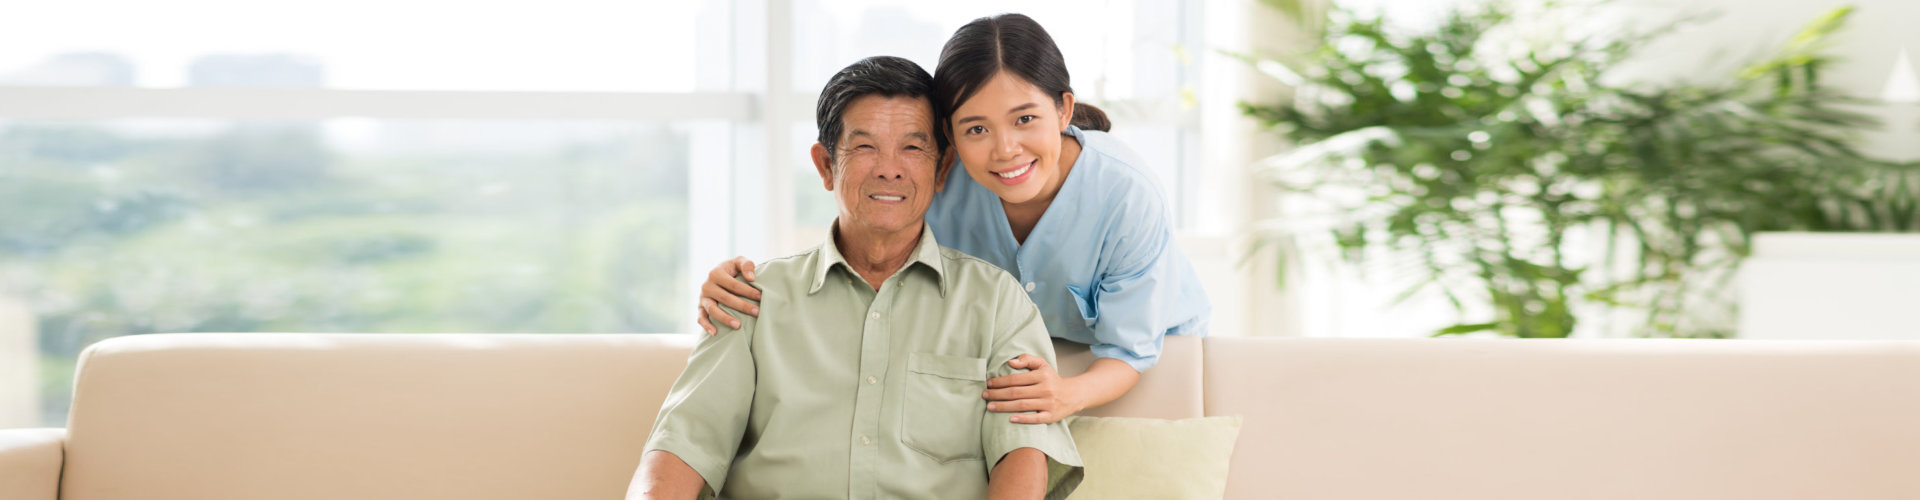 a caregiver and a senior man smiling